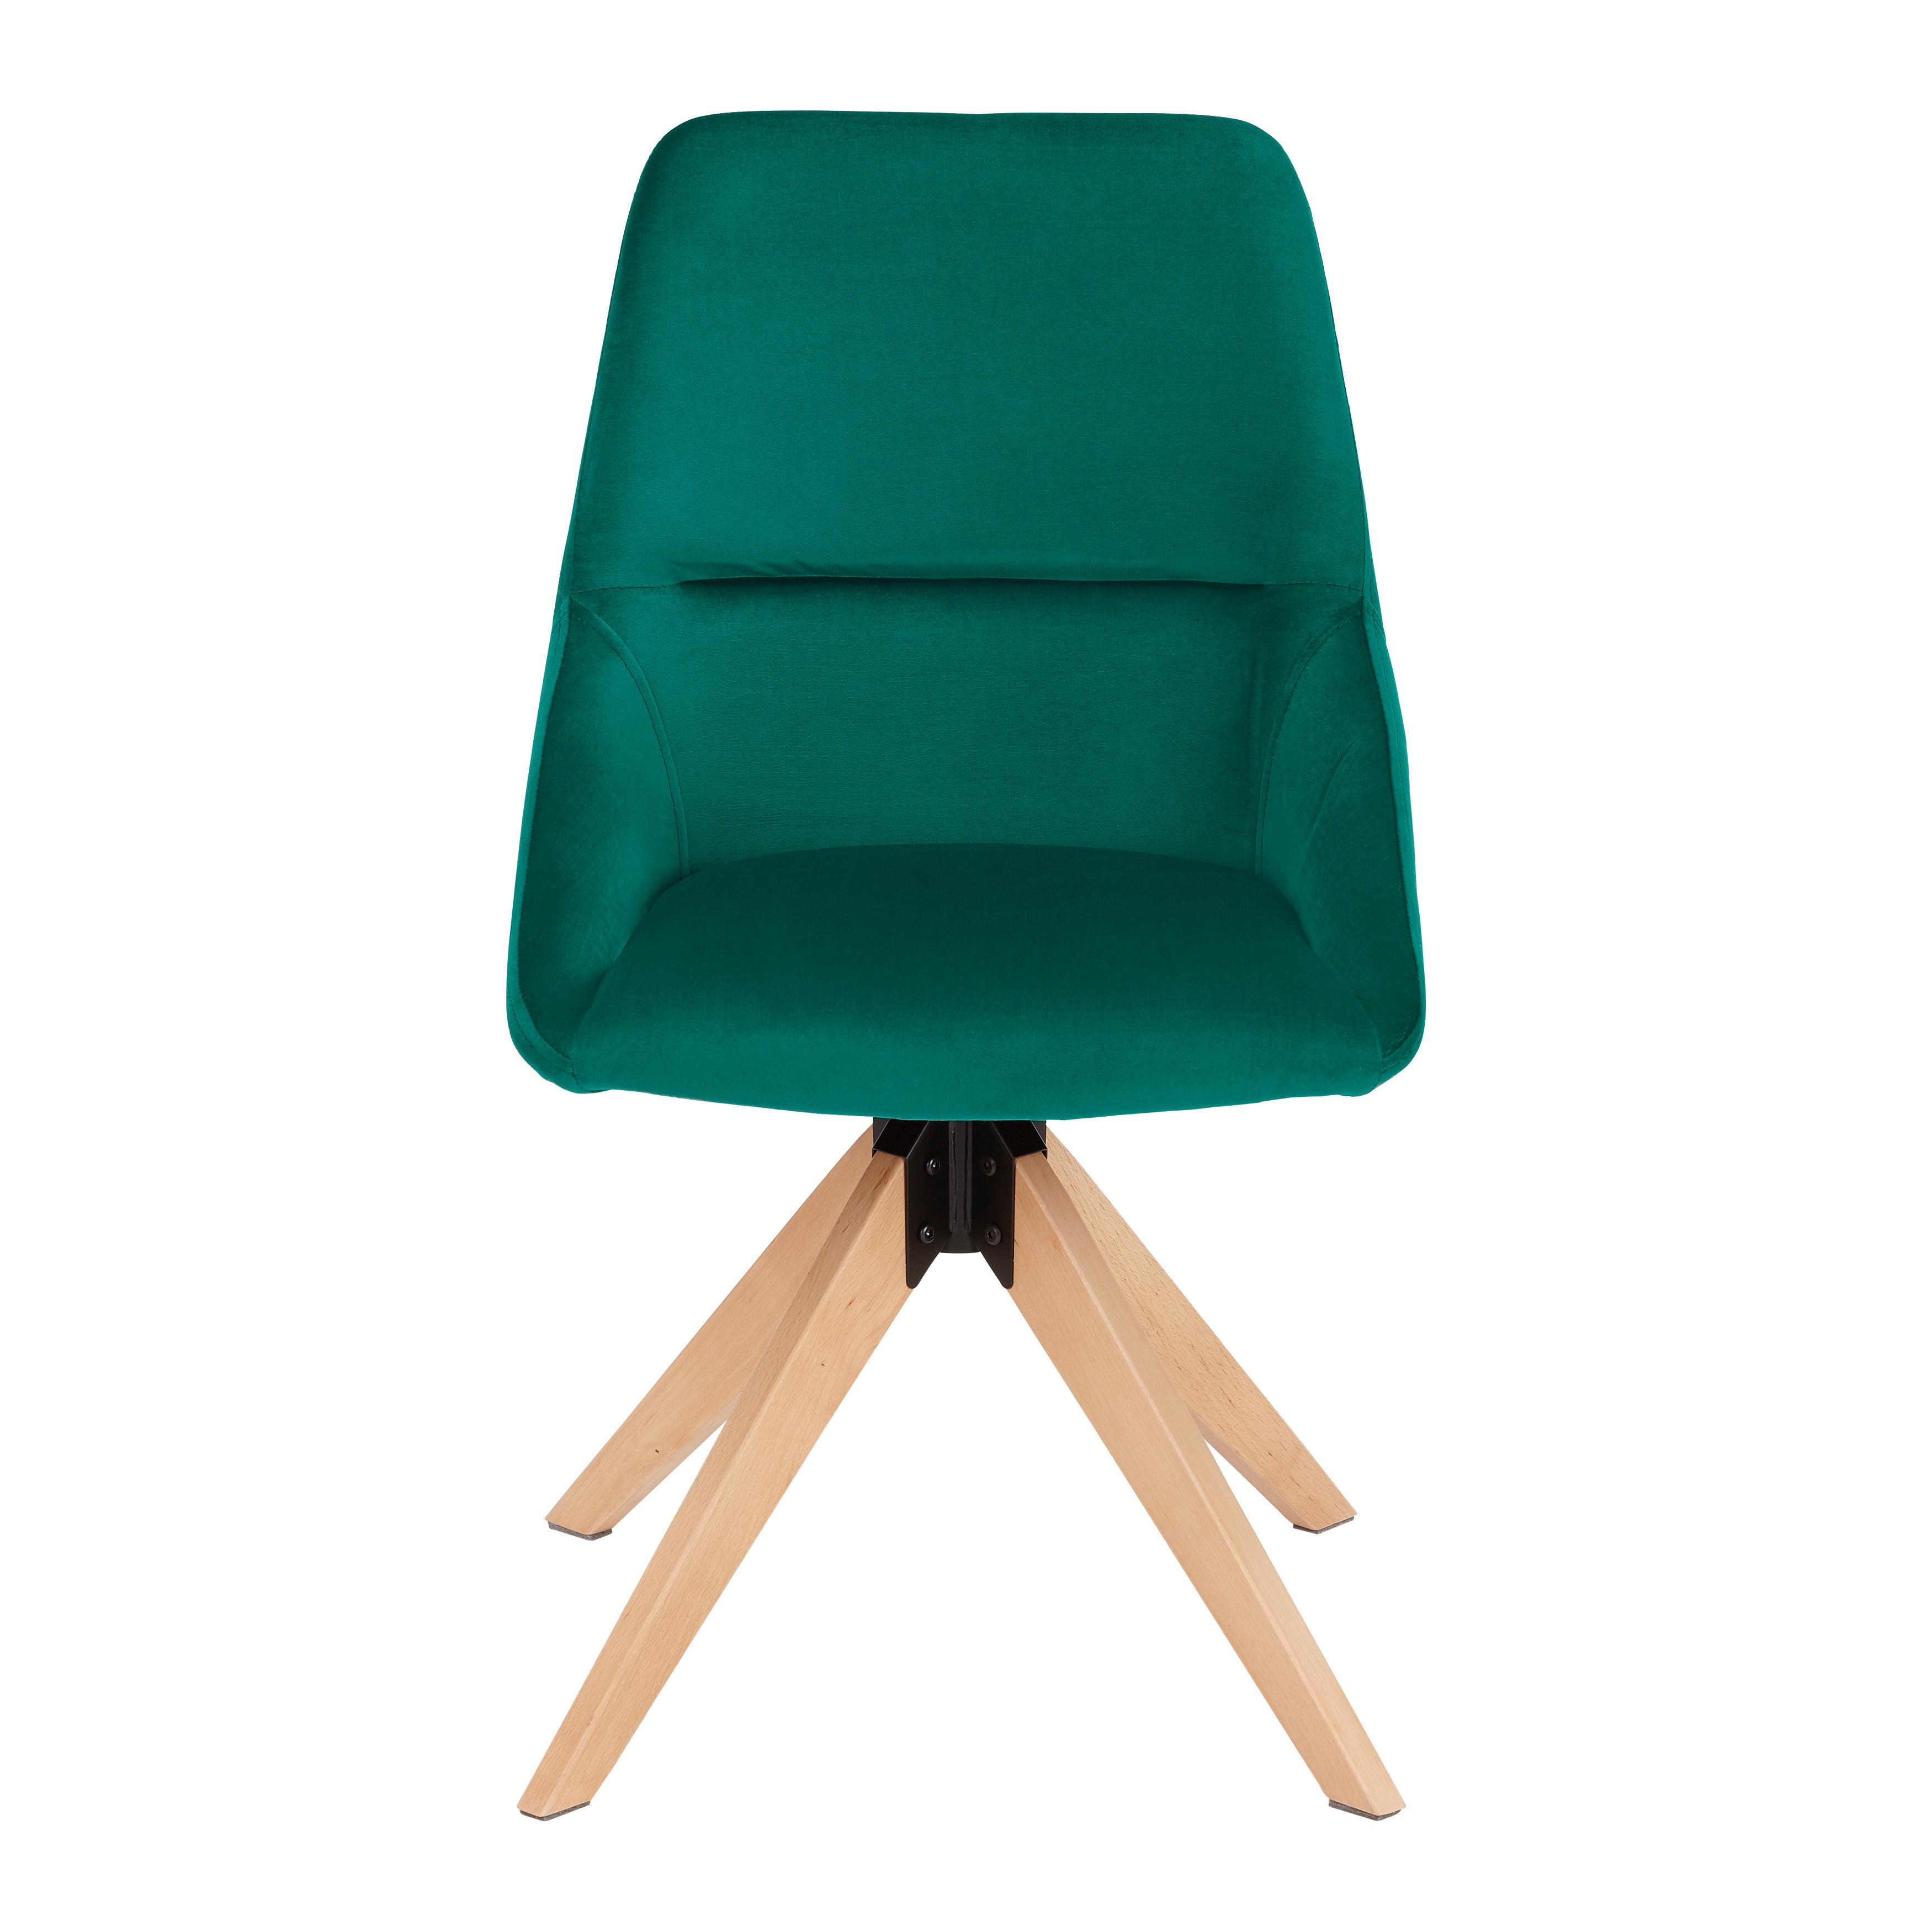 Stolička Shirin 1+1 Zdarma (1*kus=2 Produkty) - zelená/farby buku, Moderný, kov/drevo (51/86,5/57,5cm) - Modern Living